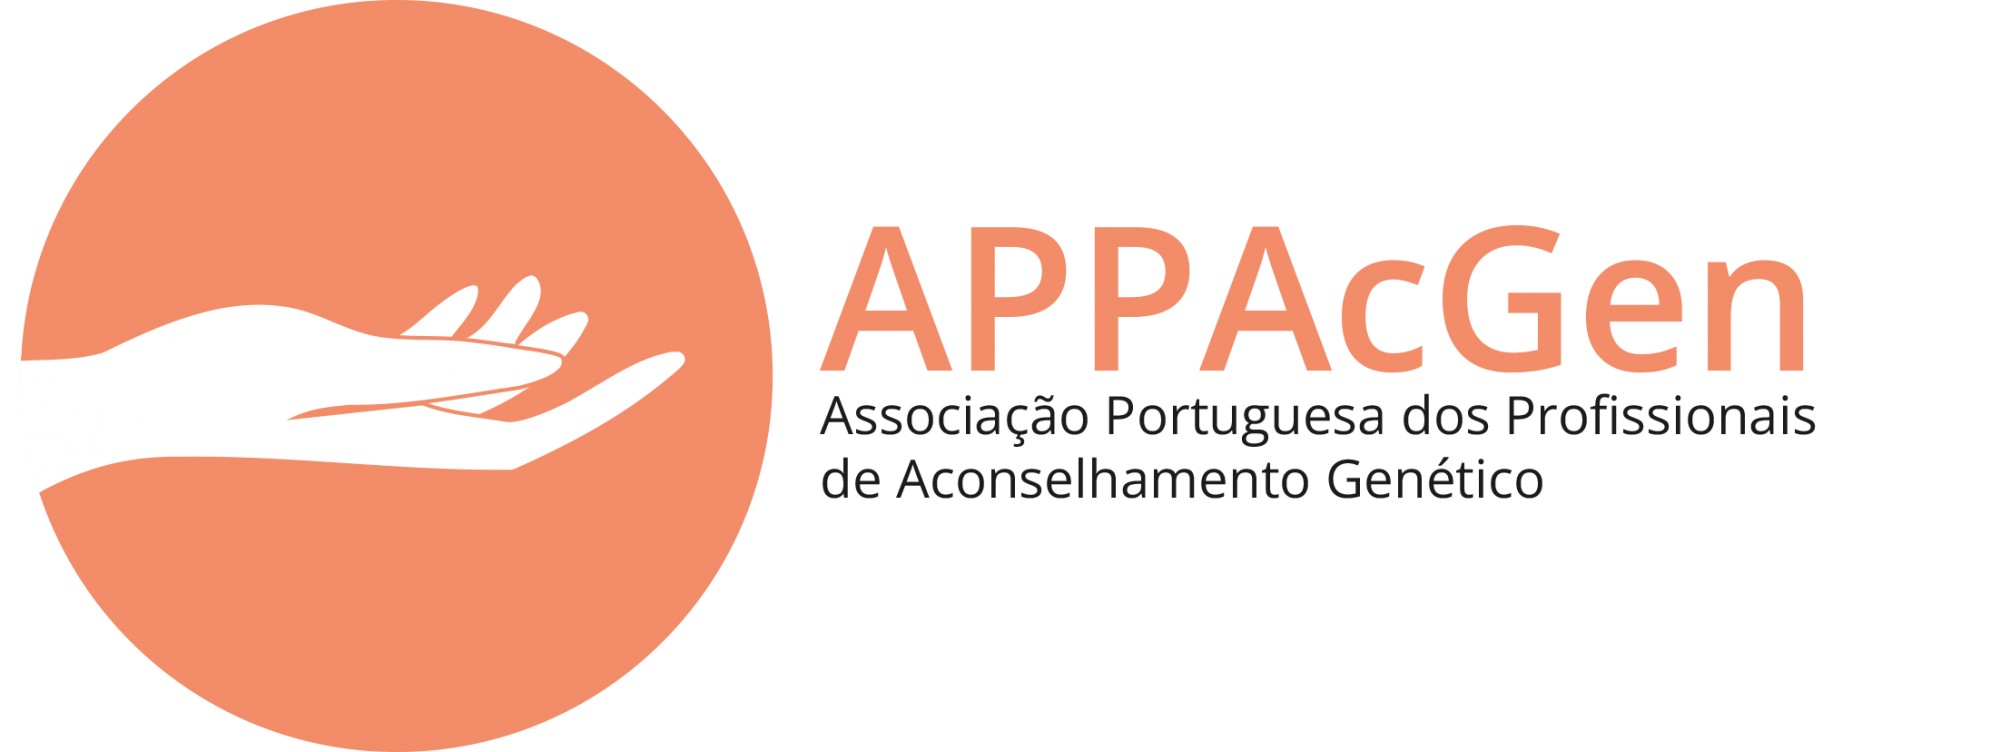 Associação Portuguesa dos Profissionais de Aconselhamento Genético